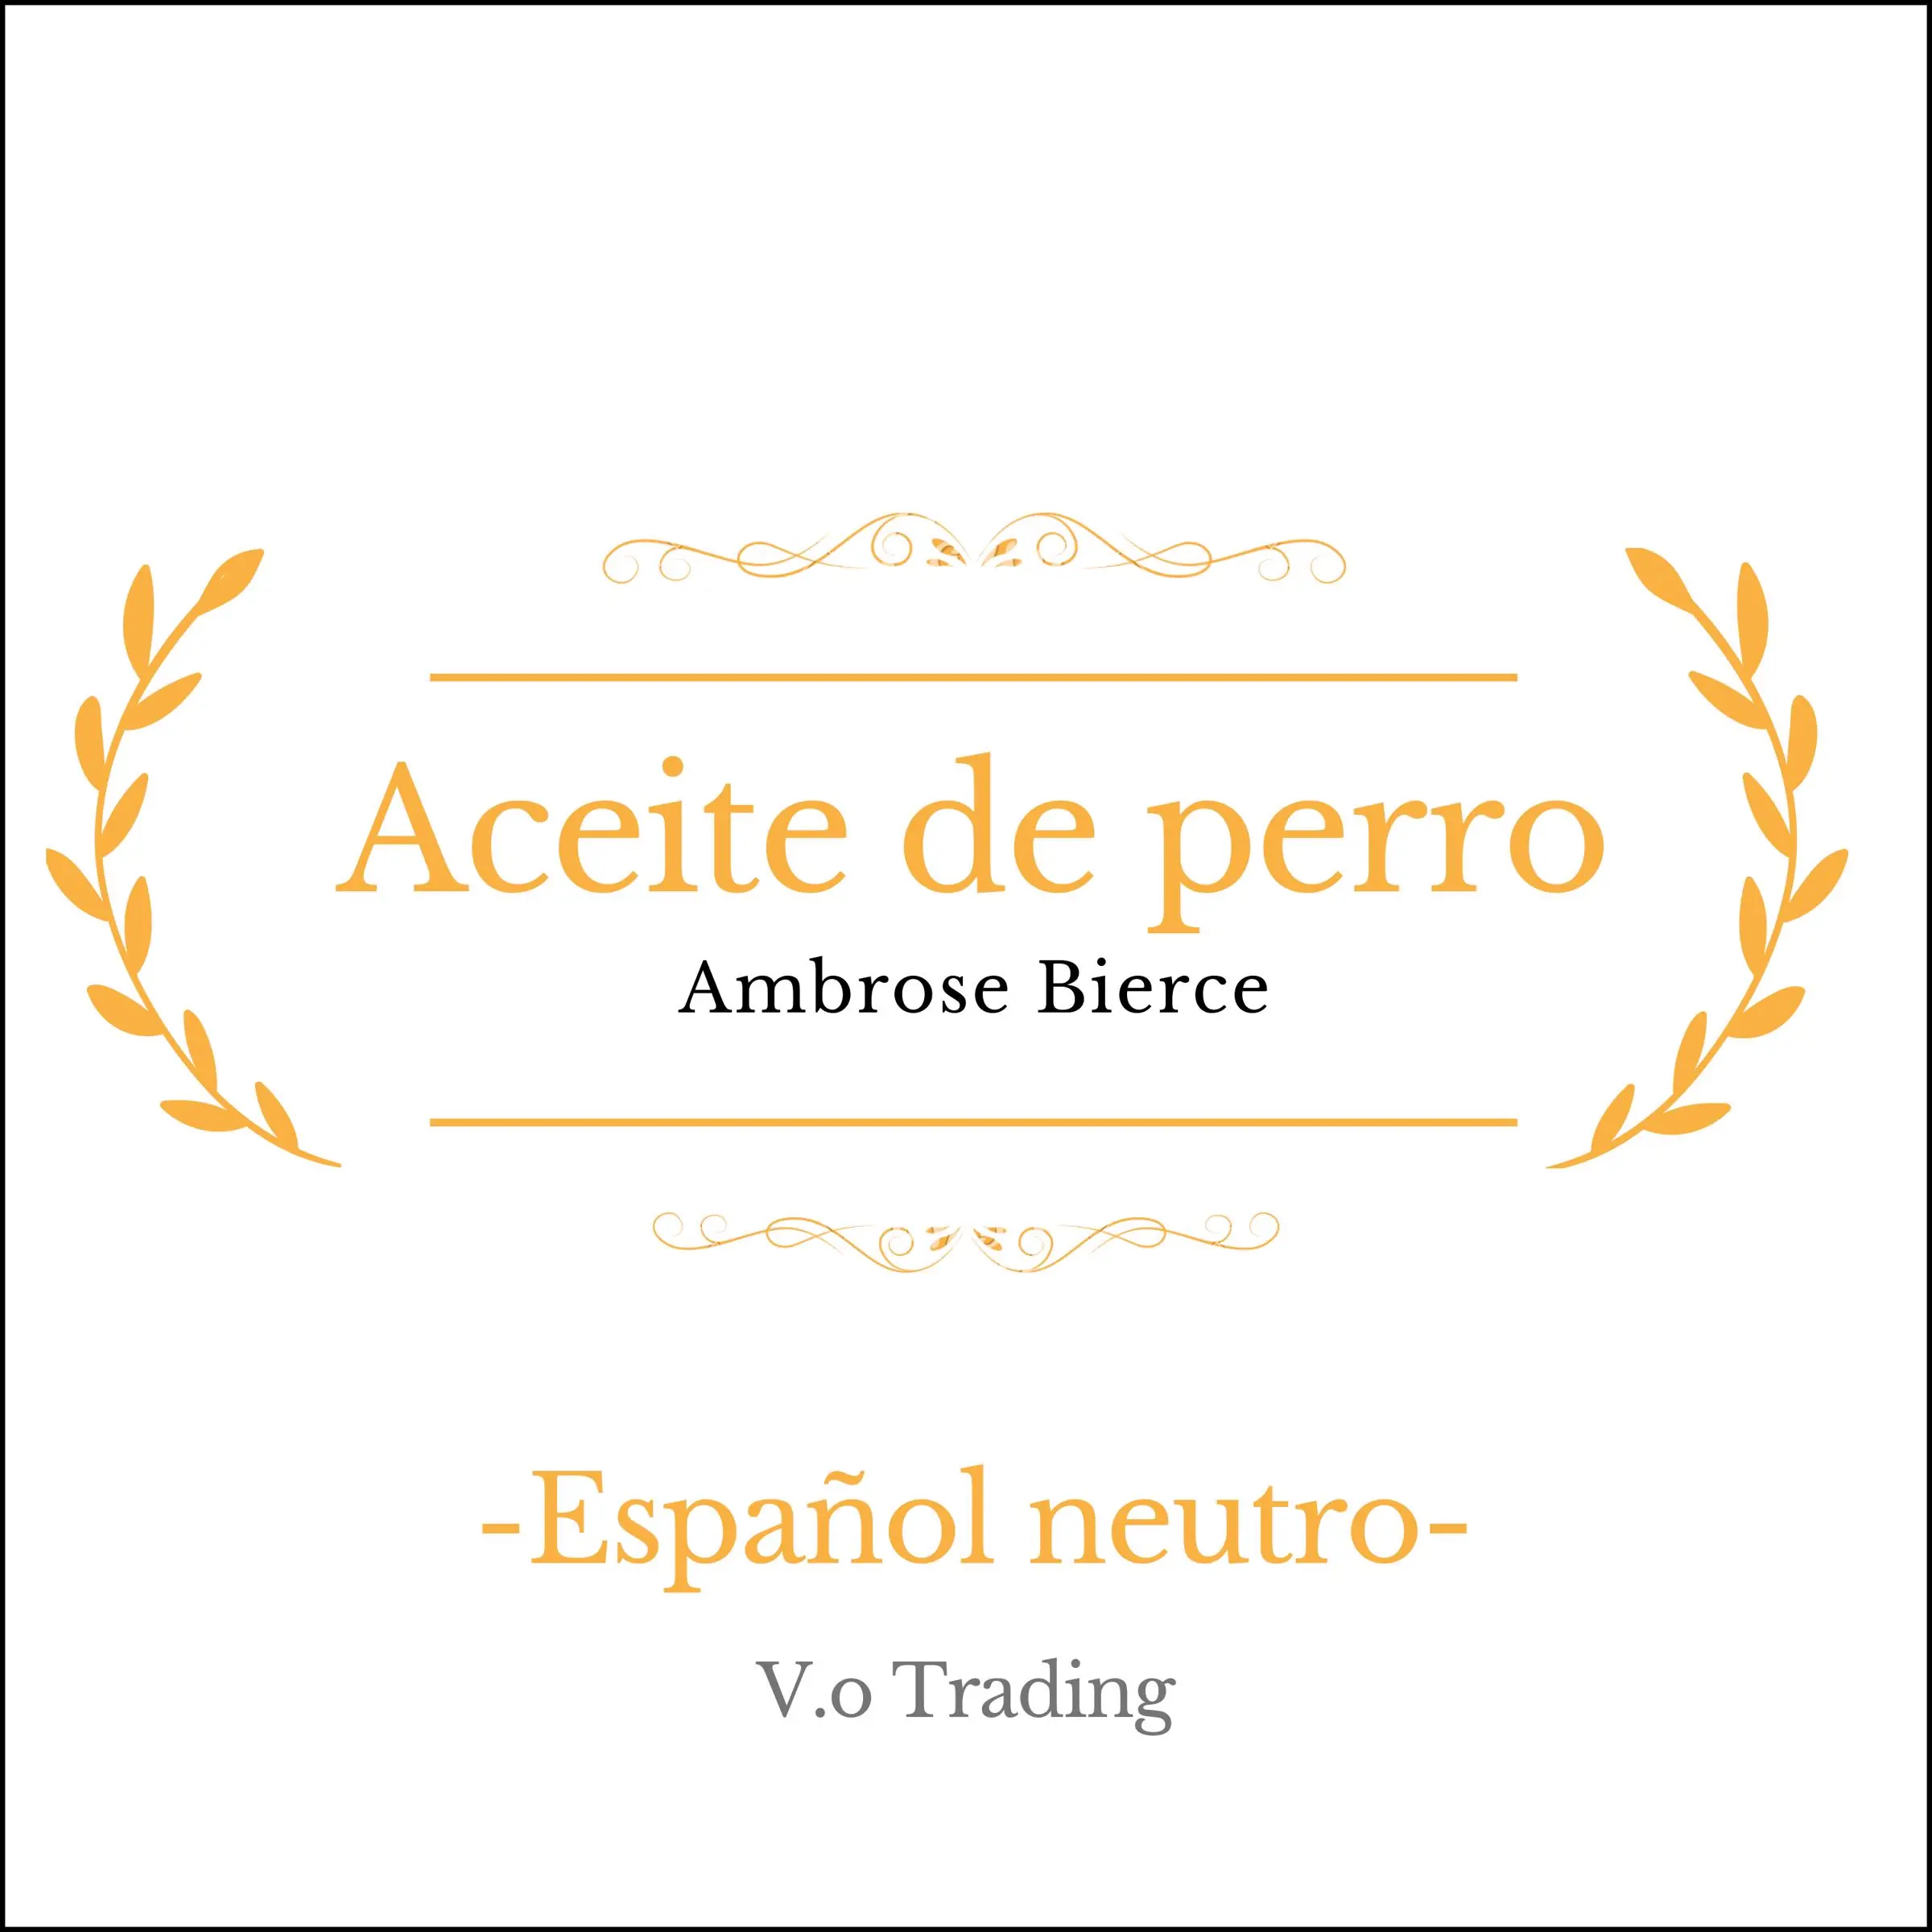 Aceite de perro by Ambrose Bierce Audiobook